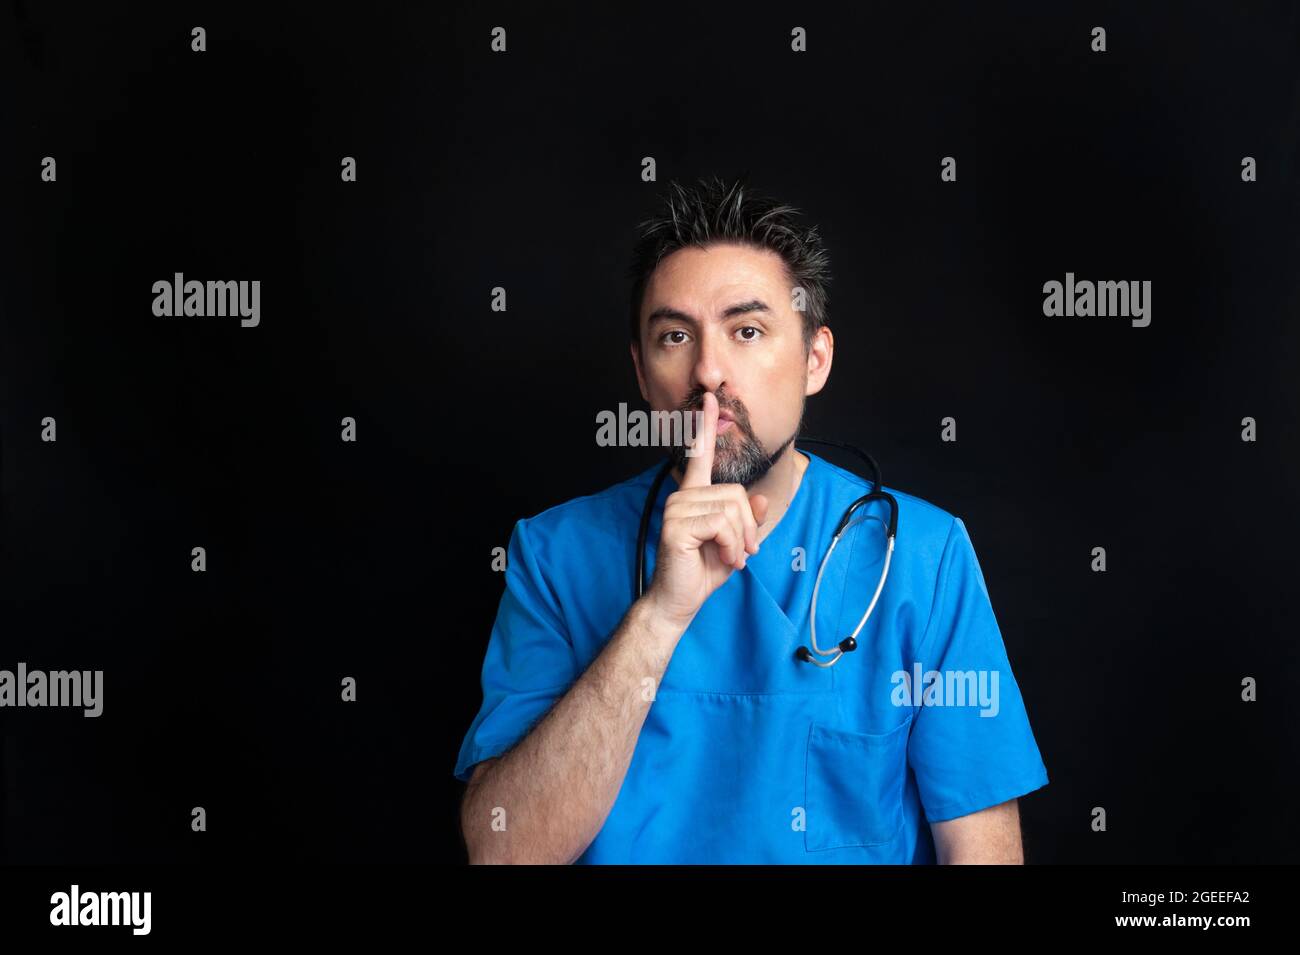 Un medico maschio vestito in uniforme blu dell'ospedale, scuro e bearded, che porta uno stetoscopio intorno al collo, chiede il silenzio con il dito indice sopra Foto Stock